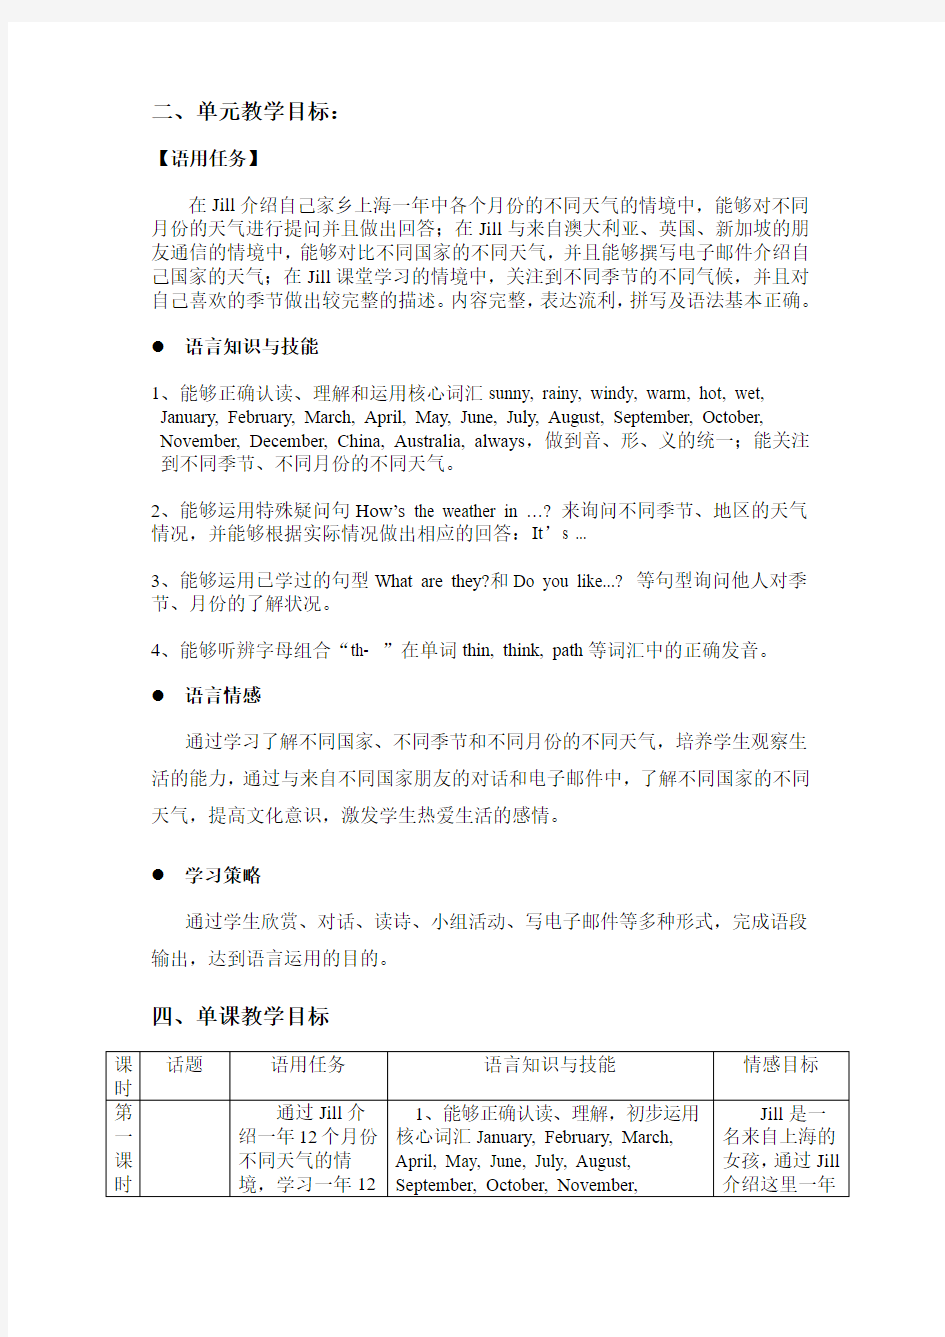 上海牛津英语 4AM4U3 teaching plan 公开课教案 区级获奖 单元教案